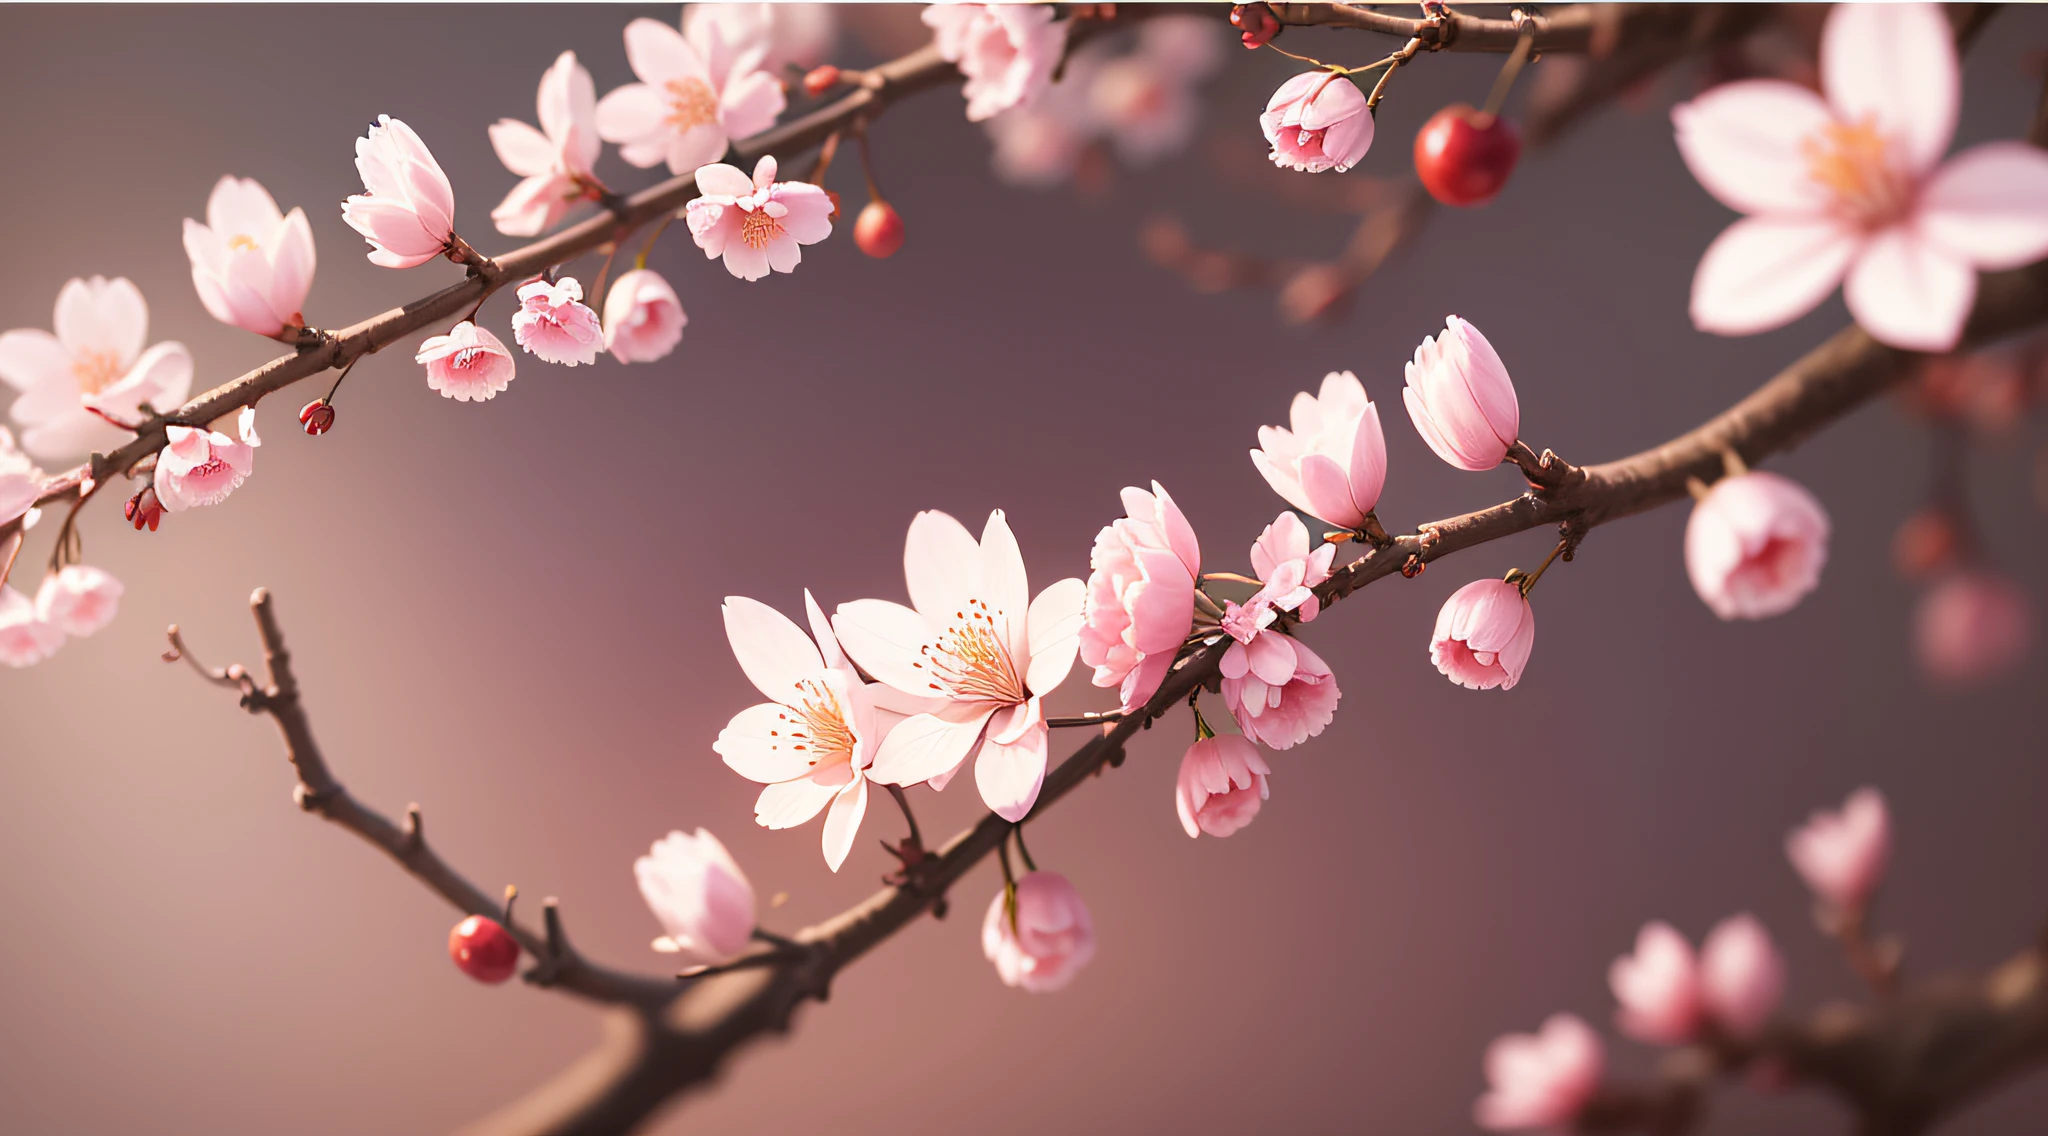 تحفة、أعلى جودة、جودة صورة فائقة الجودة、جودة الصورة 4K、رسم توضيحي لأزهار الكرز في إزهار كامل、الشجرة الكبيرة、تدرجات جميلة、طمس الخلفية